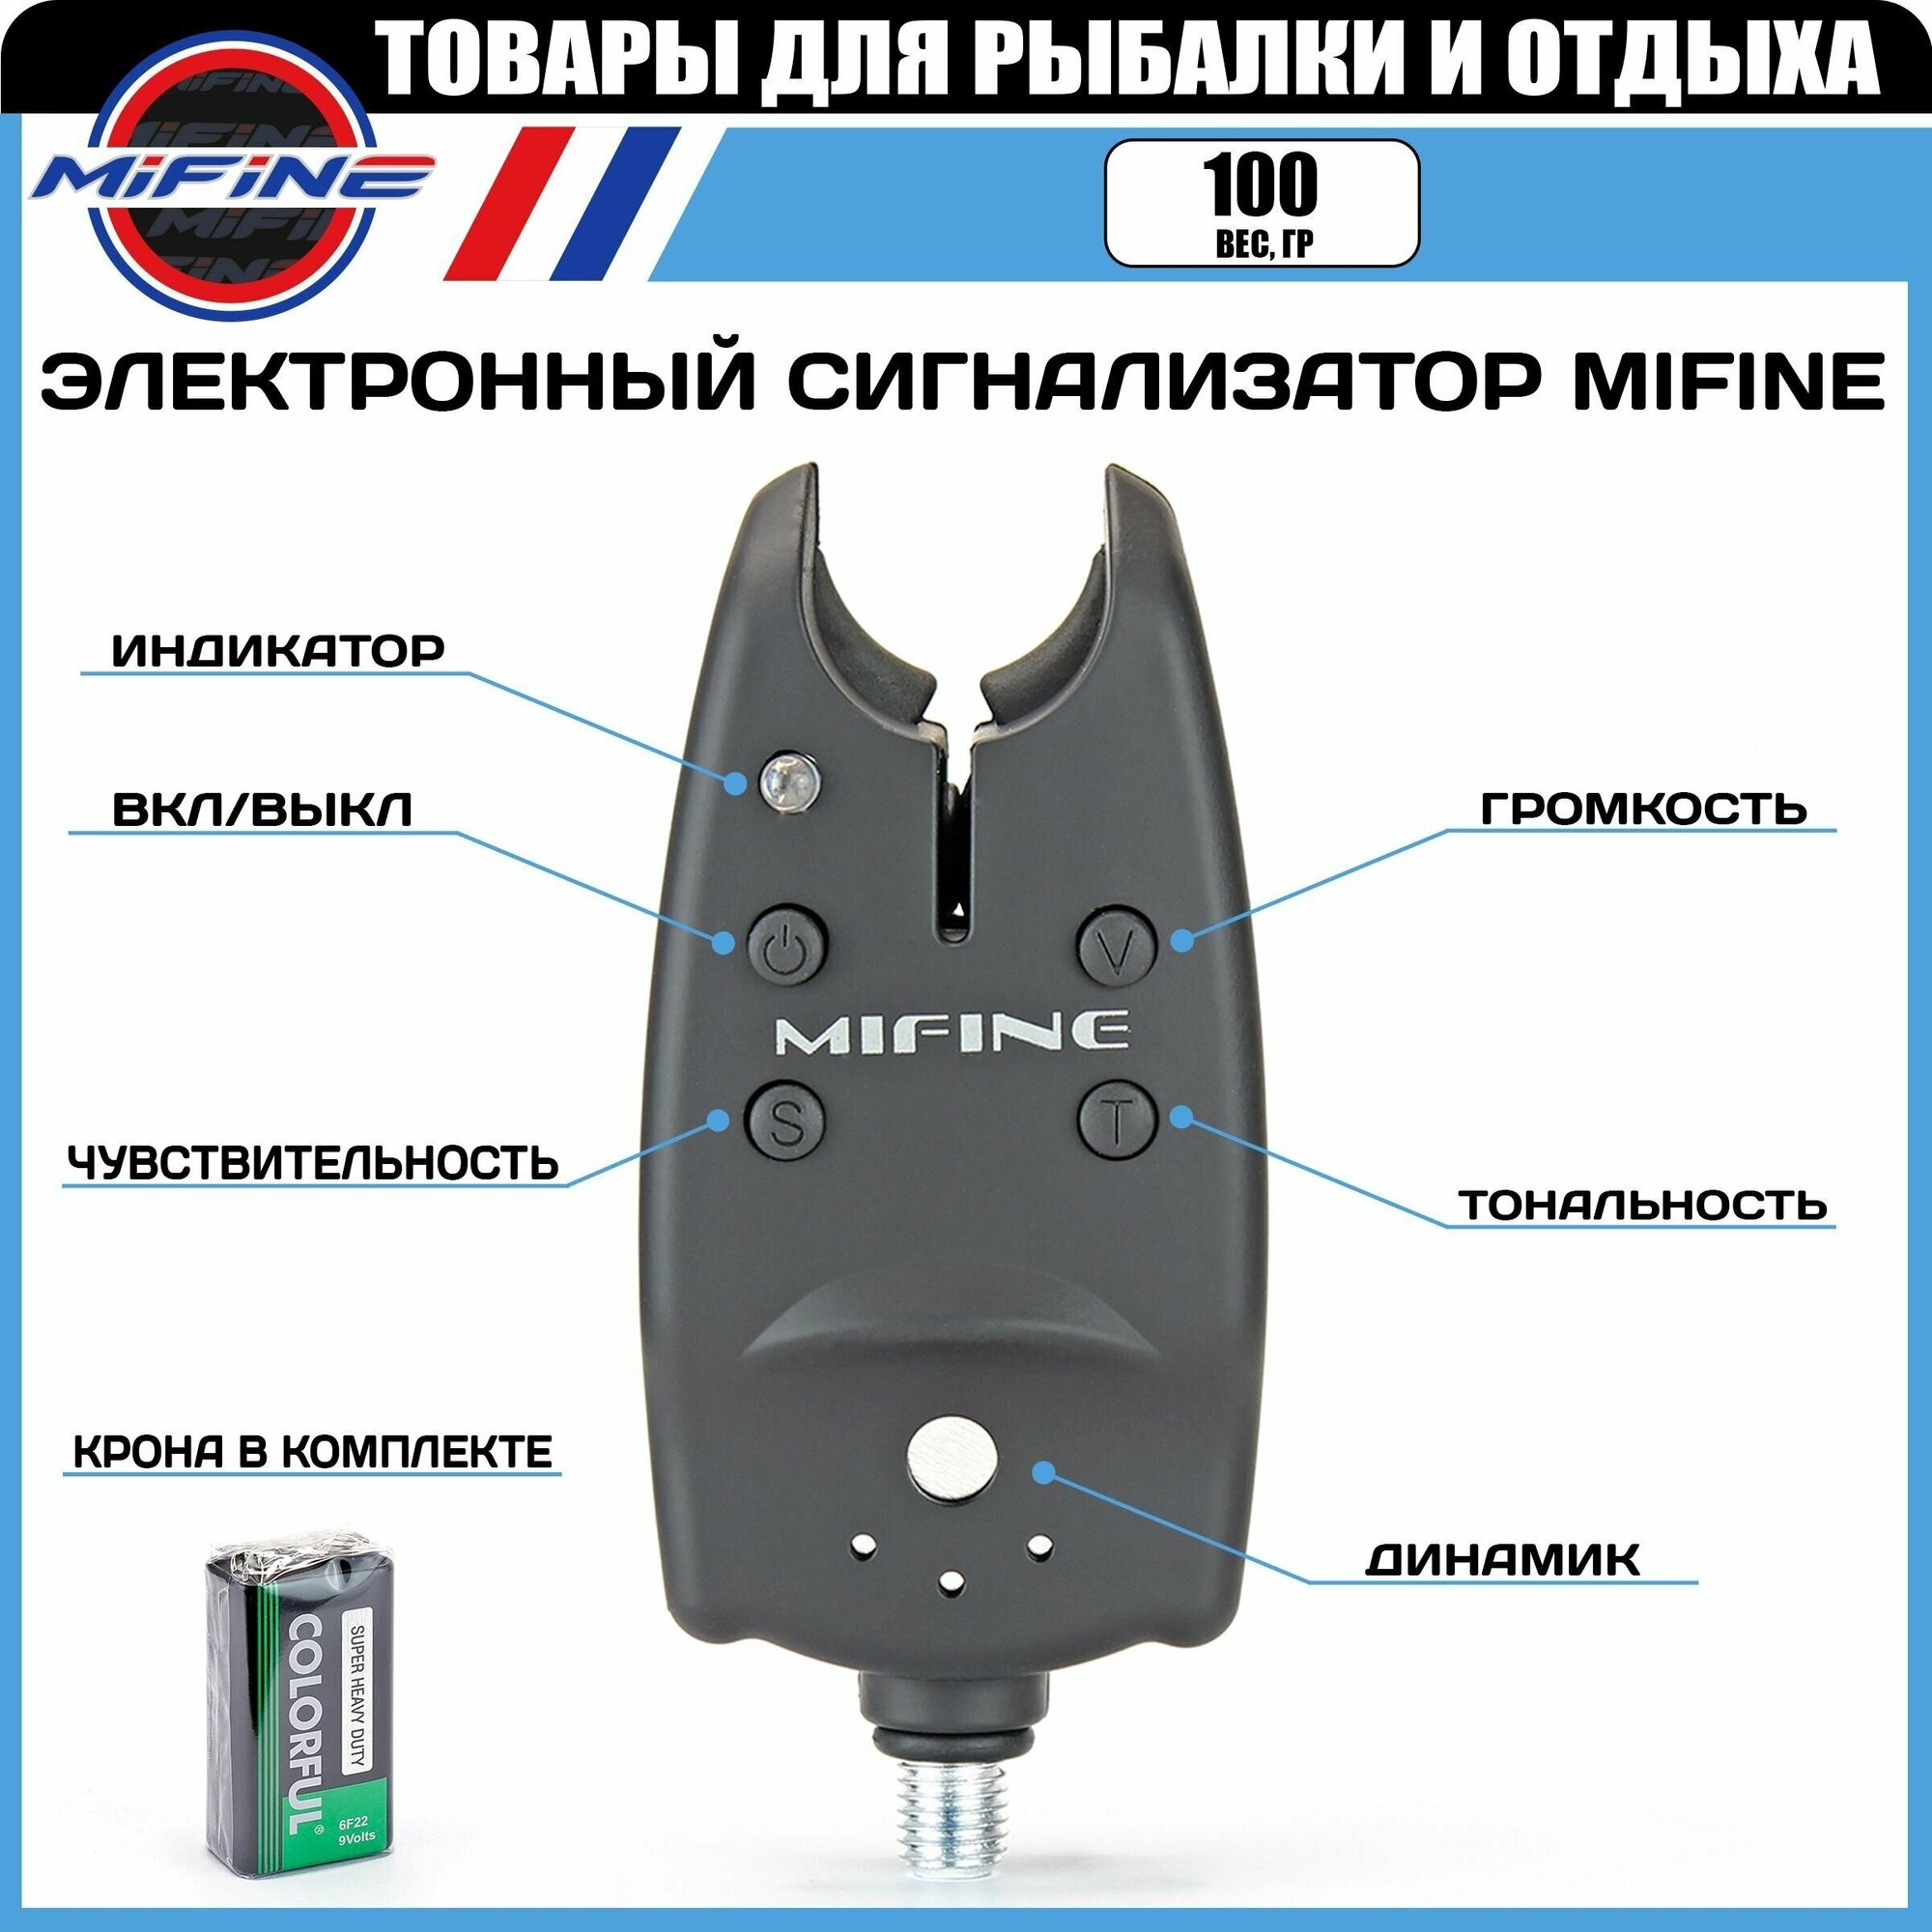 Электронный сигнализатор поклёвки MIFINE индикатор поклевки для карповой рыбалки (крона в комплекте)